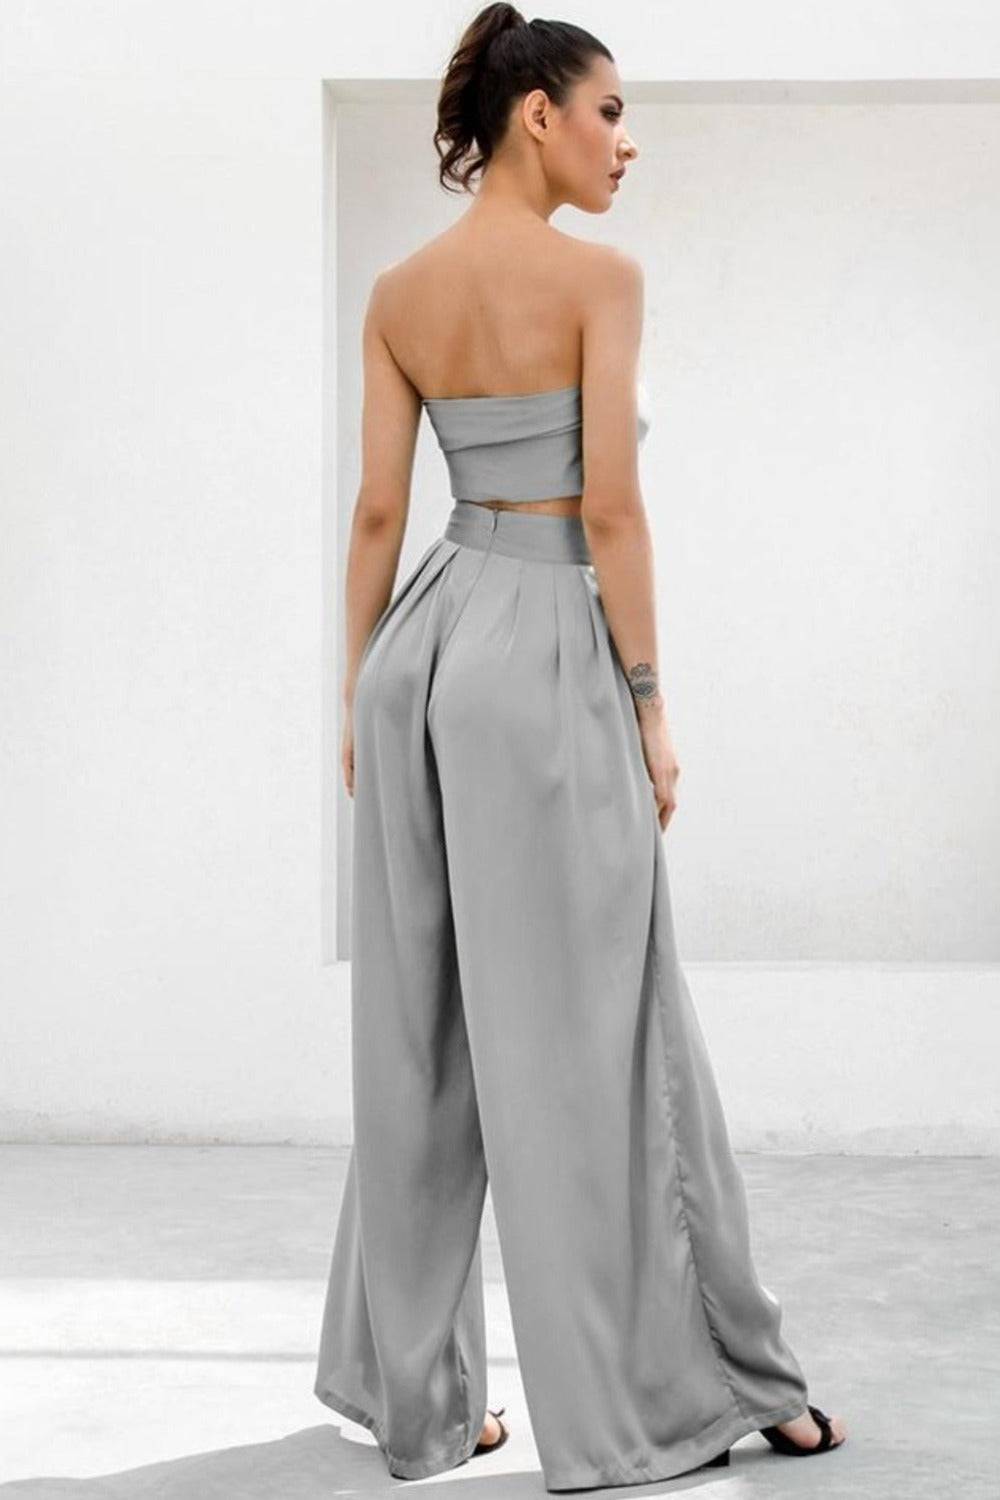 Gray Strapless Tie Front High Waist Jumpsuit Pants Set - TGC Boutique - 2 Piece Set